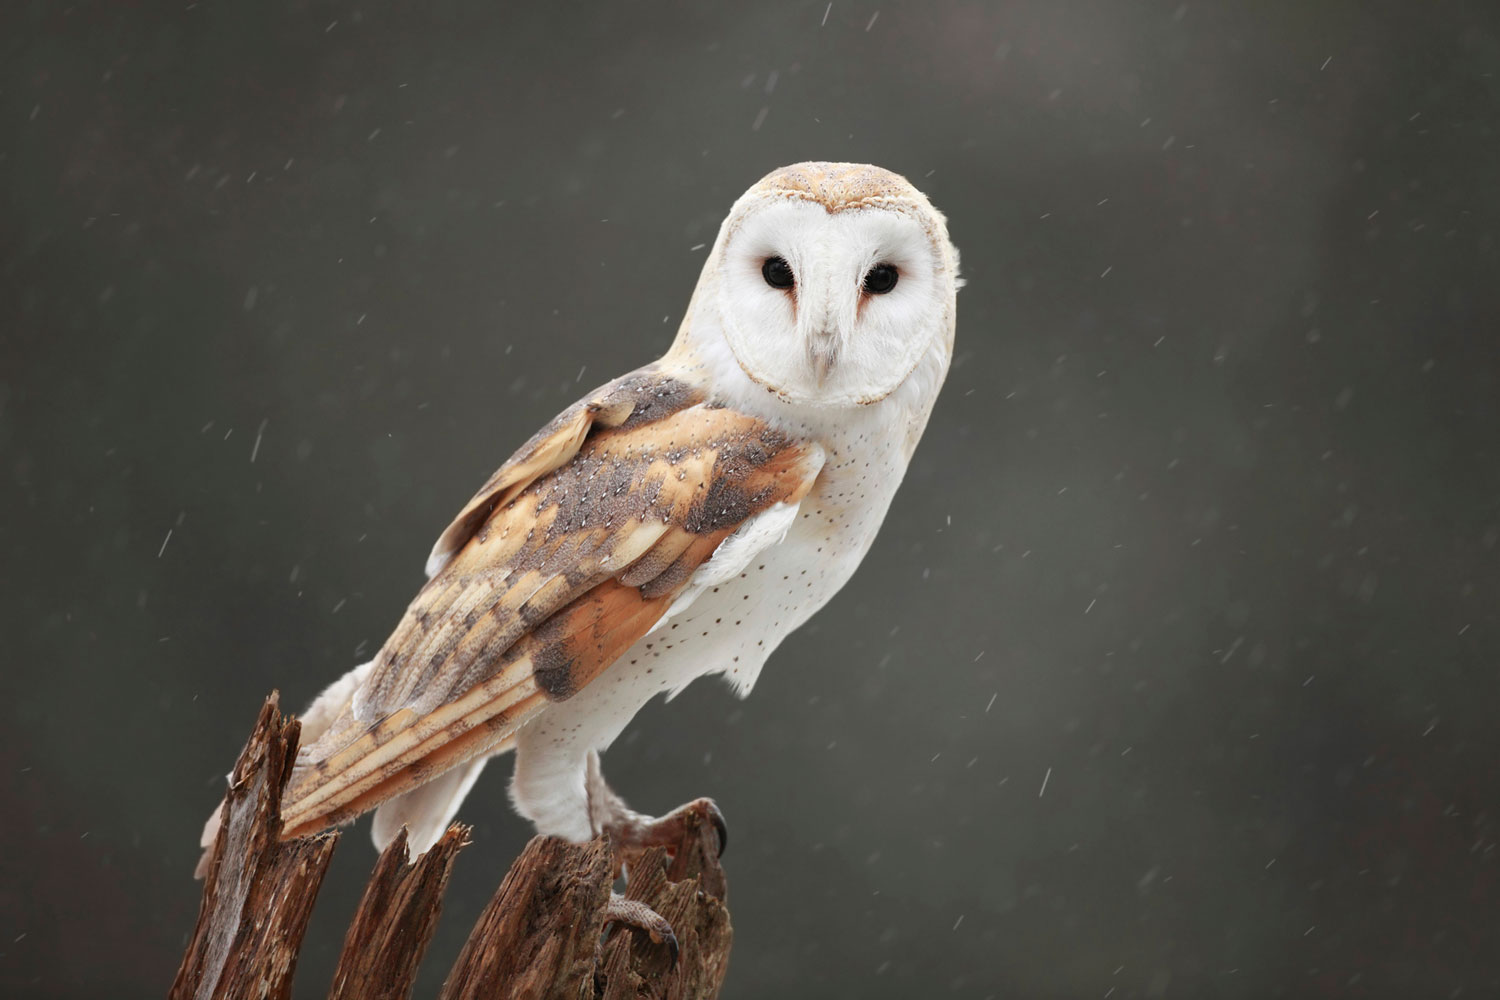 A barn owl on a stump